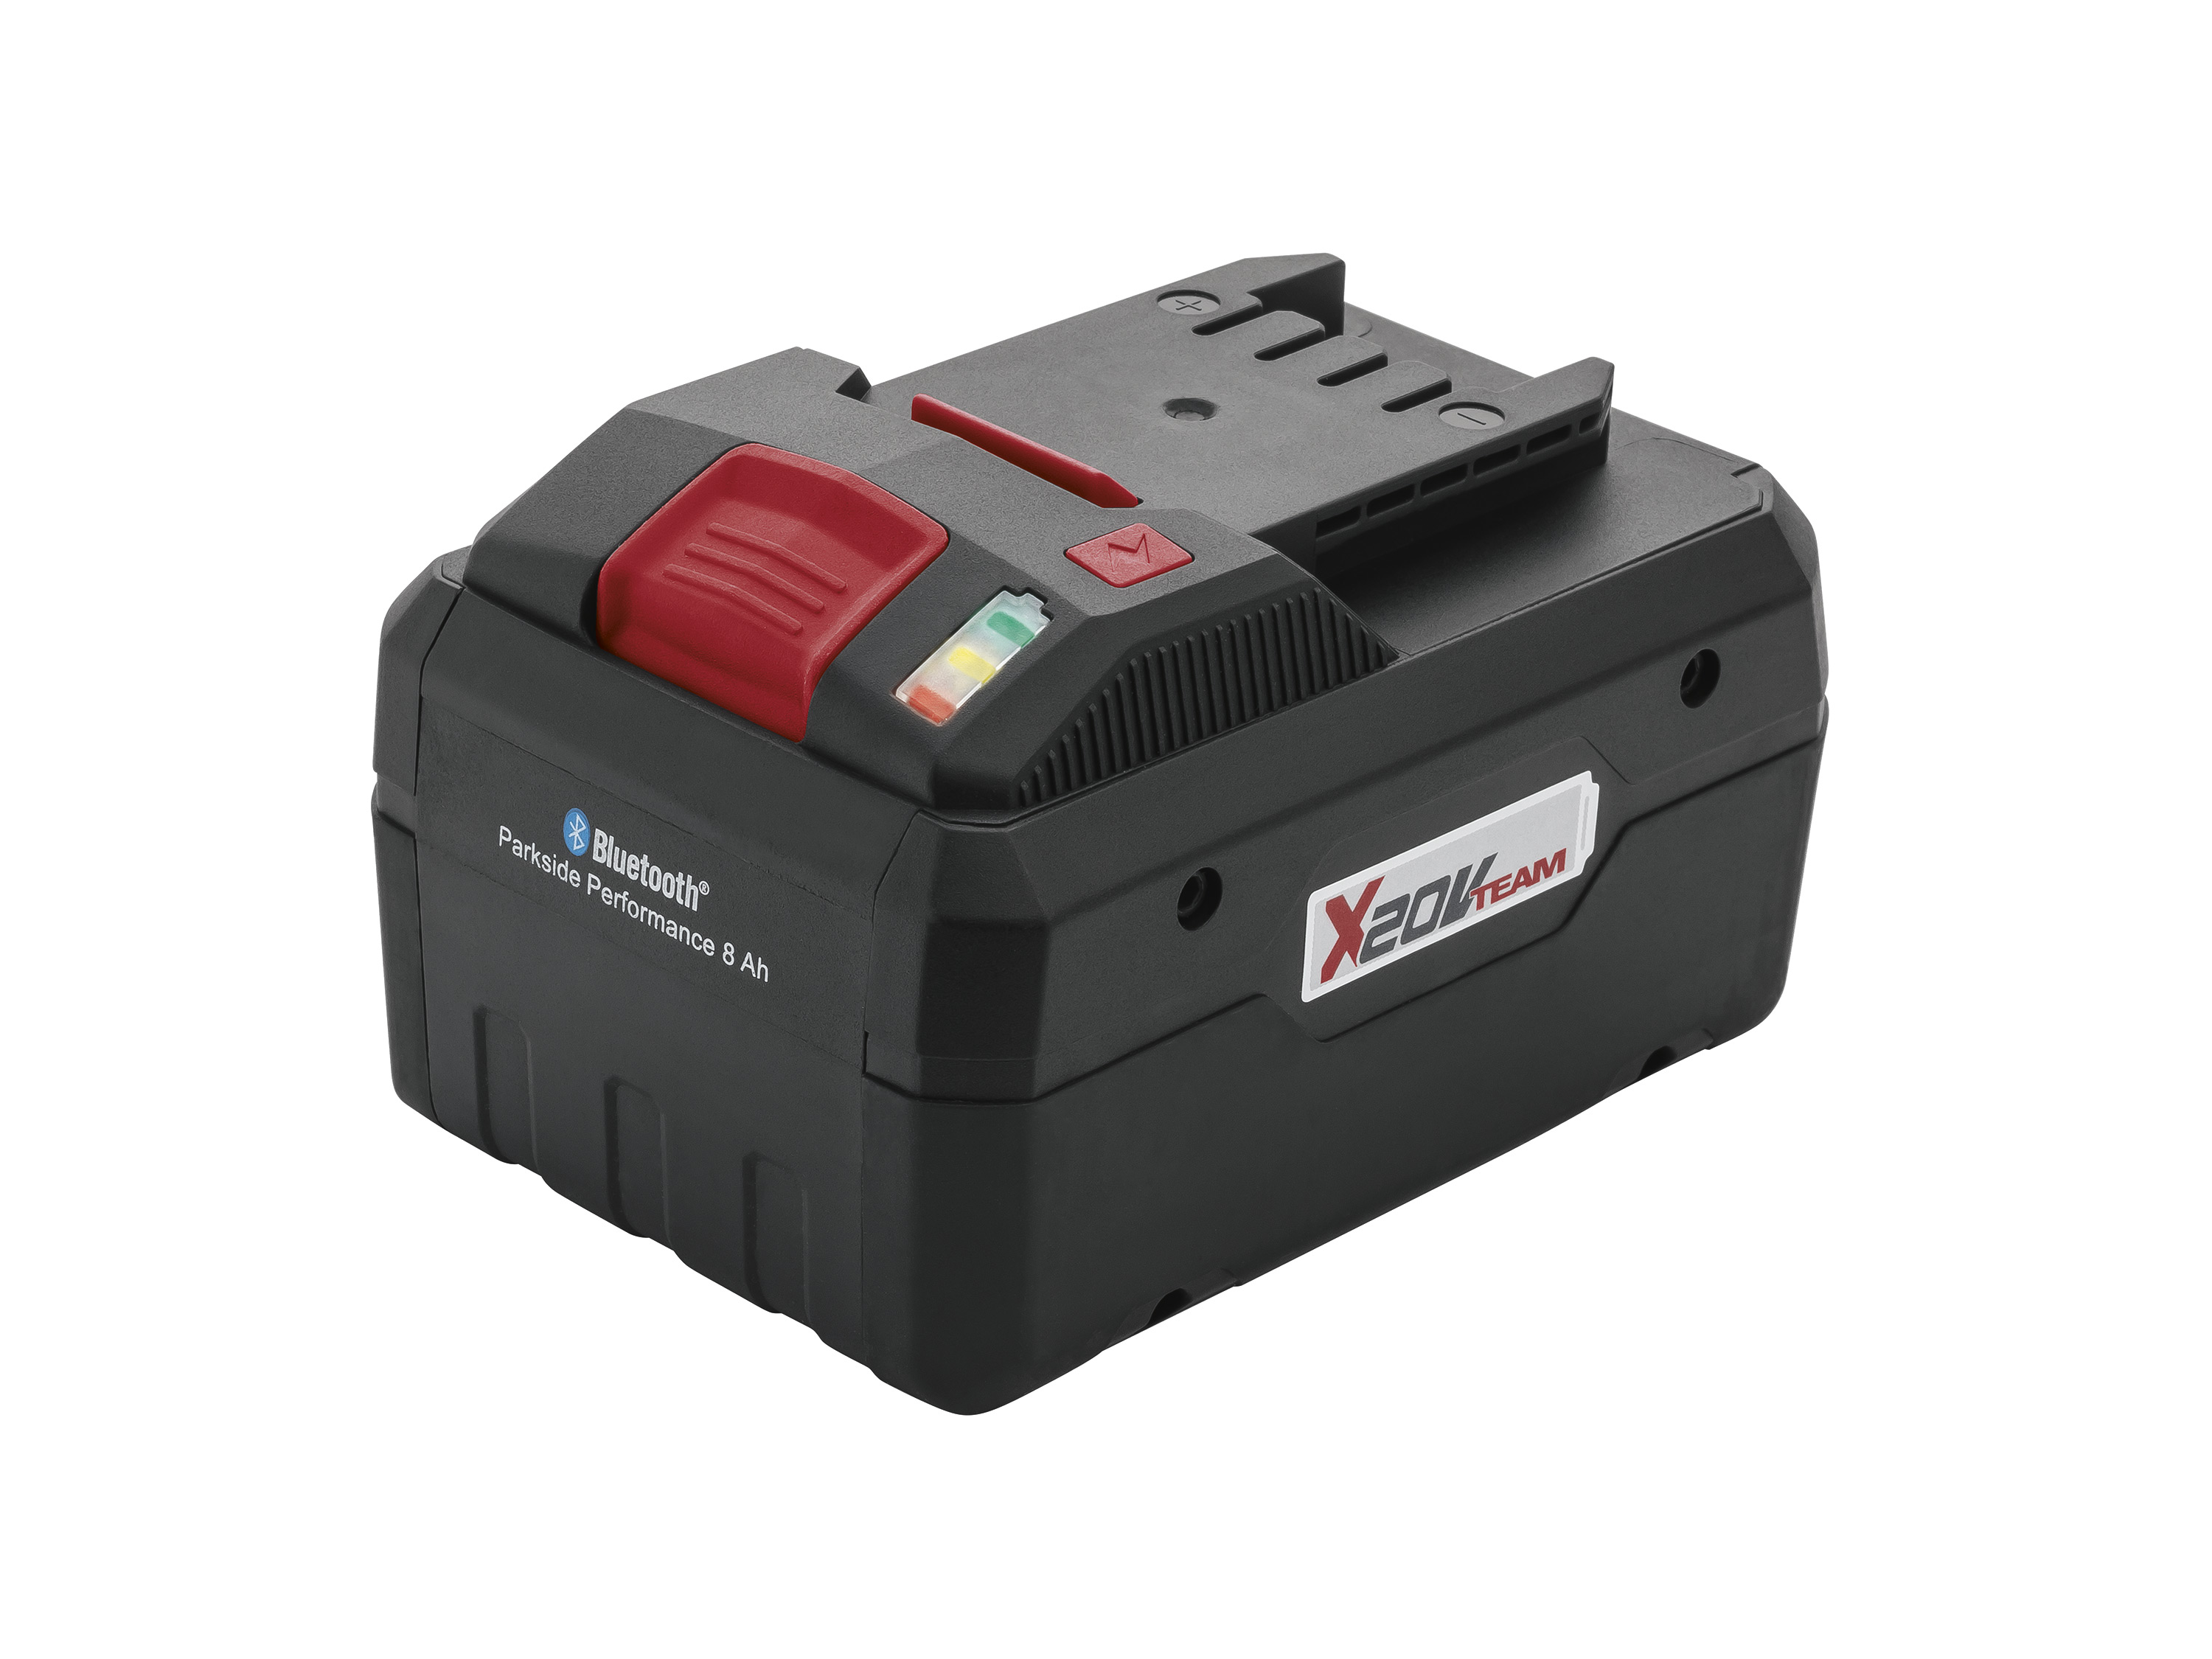 PARKSIDE PERFORMANCE® Batterie Smart PAPS 208 A1, 8 Ah, 20 V